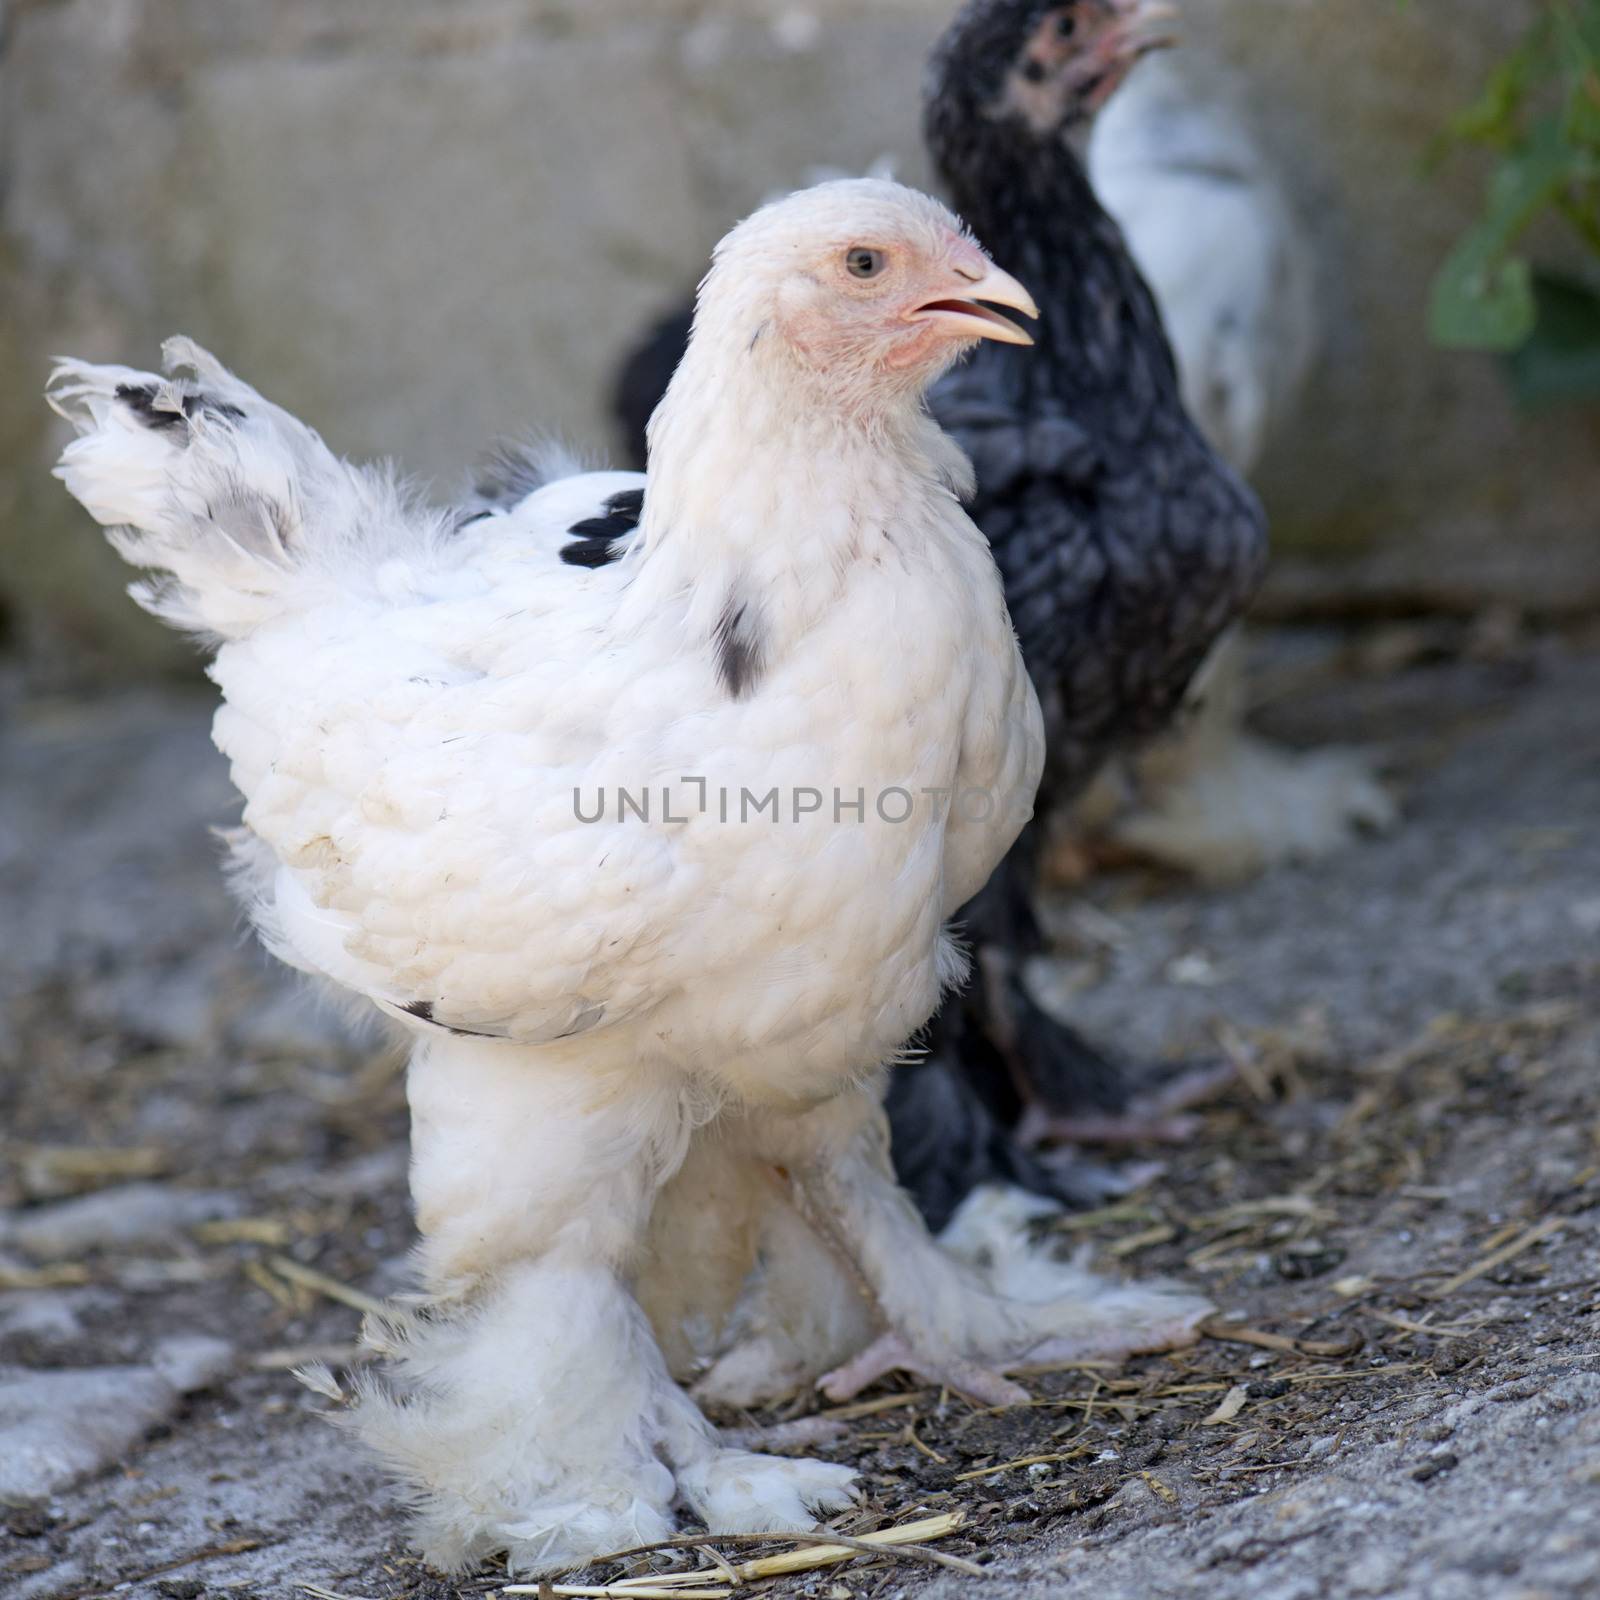 young brahma chicken by cynoclub